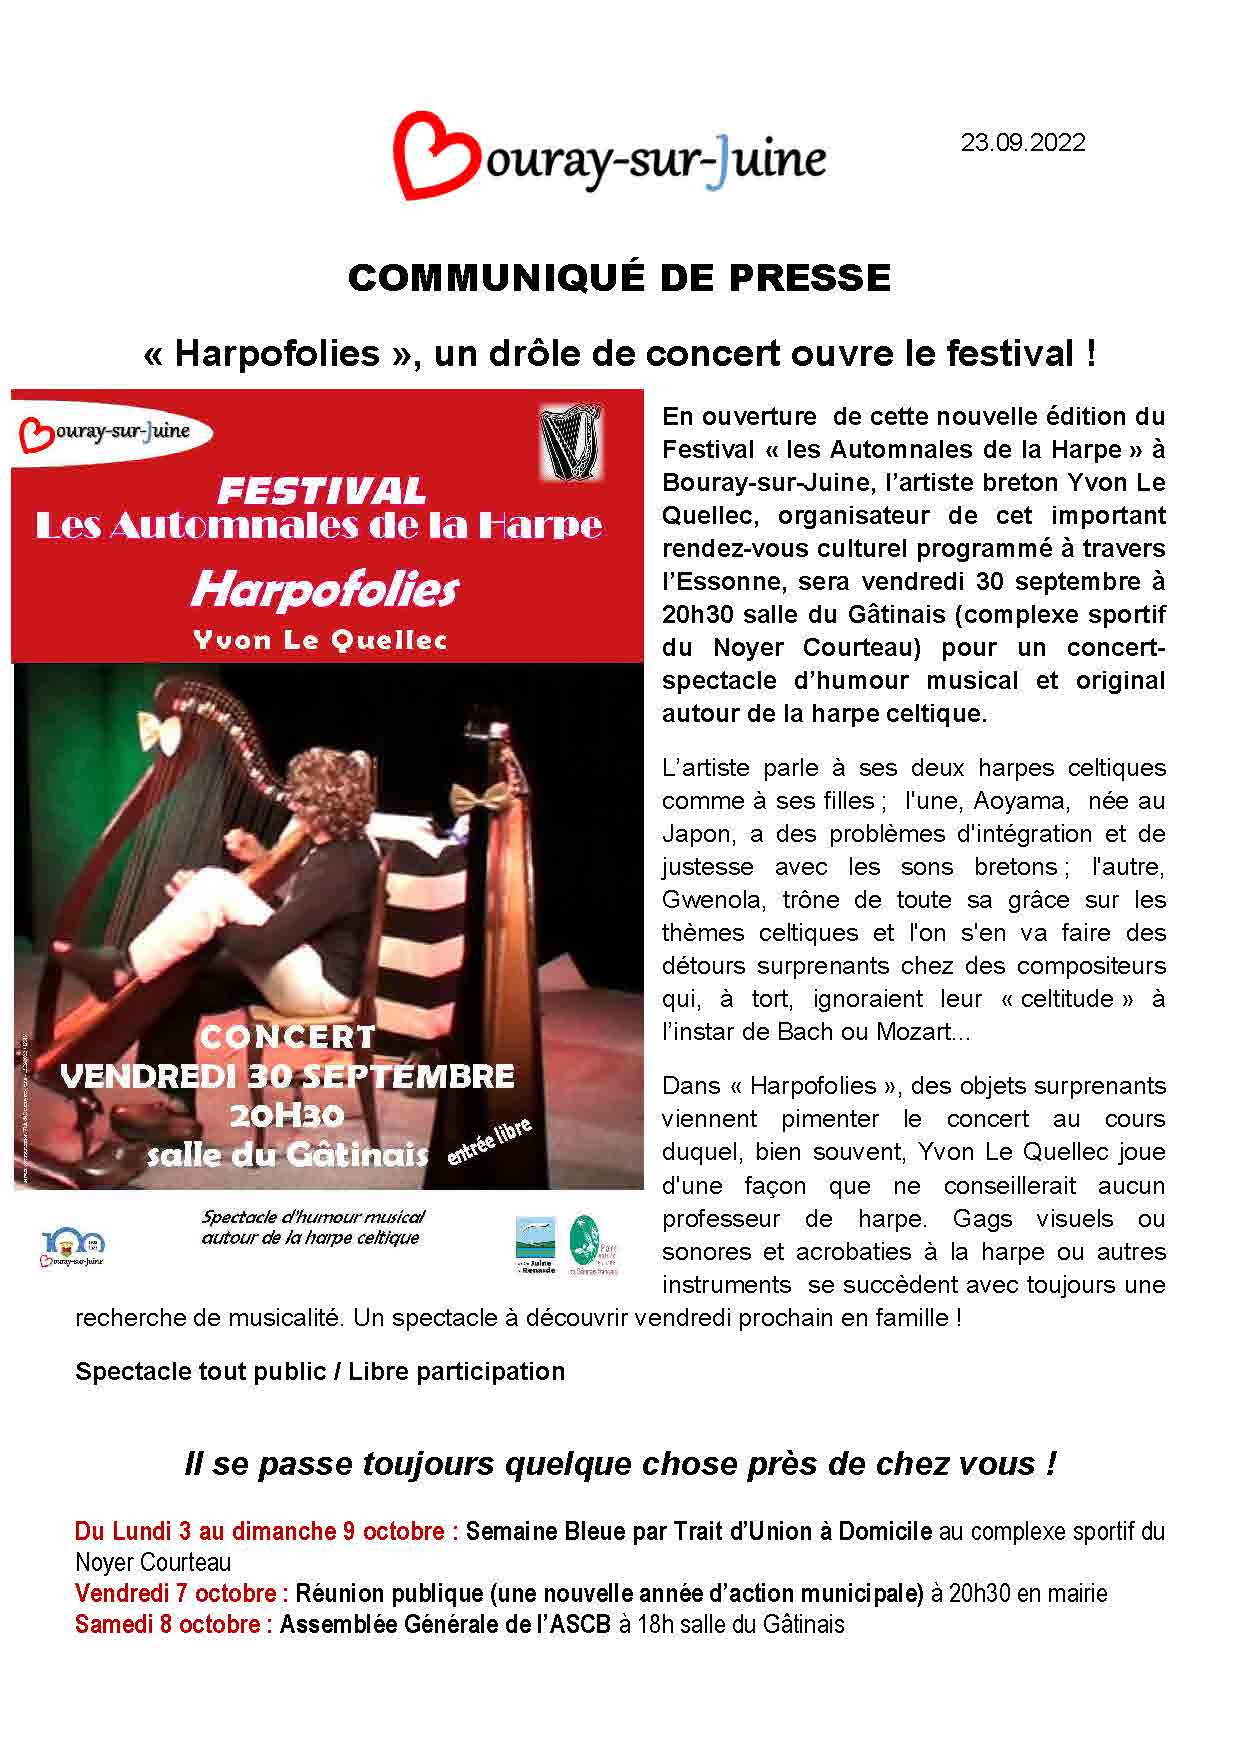 2022.09.23 Communiqué de presse Concert Harpofolies Y. Le Quellec du 30.09.22